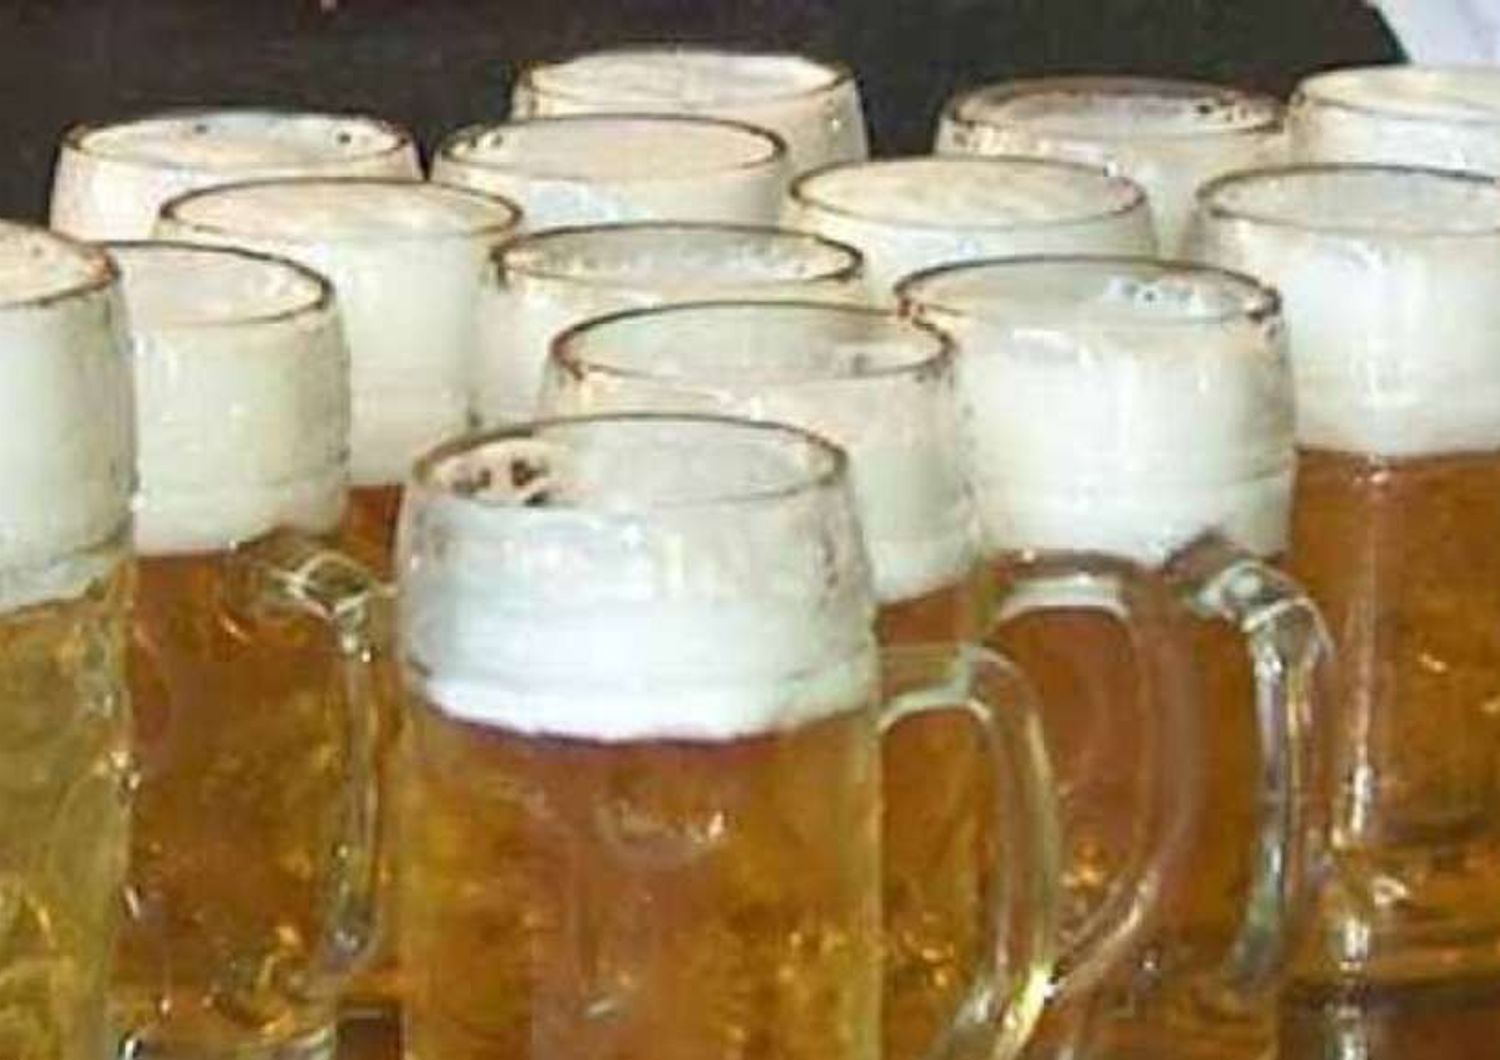 Italia fuori dalla Top 10 dei bevitori di birra